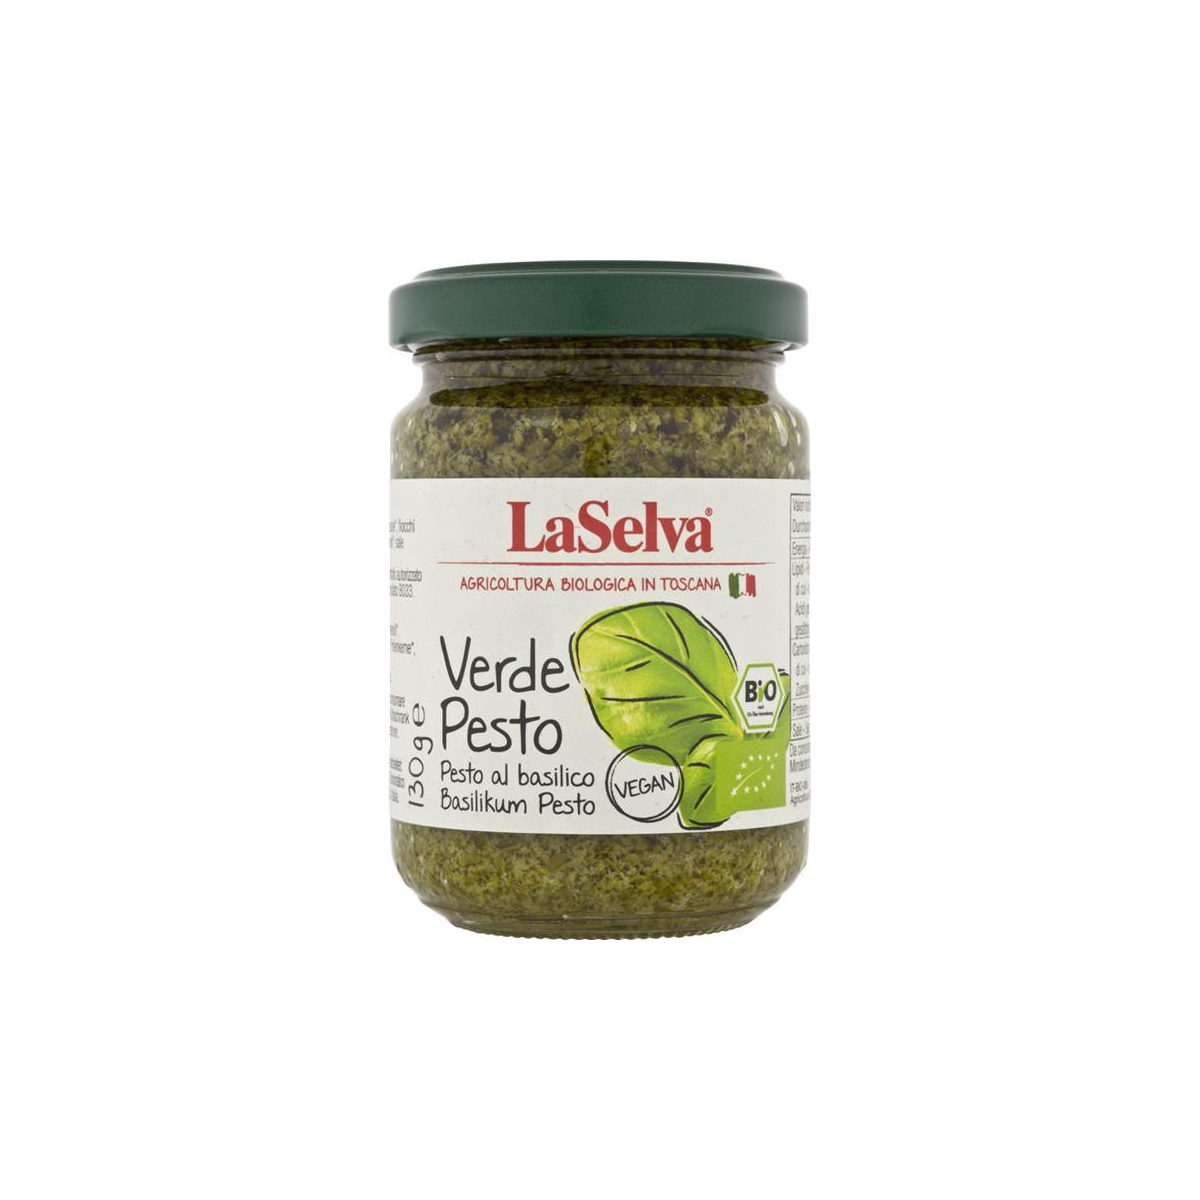 LaSelva - Verde Pesto - Basilikum Pesto